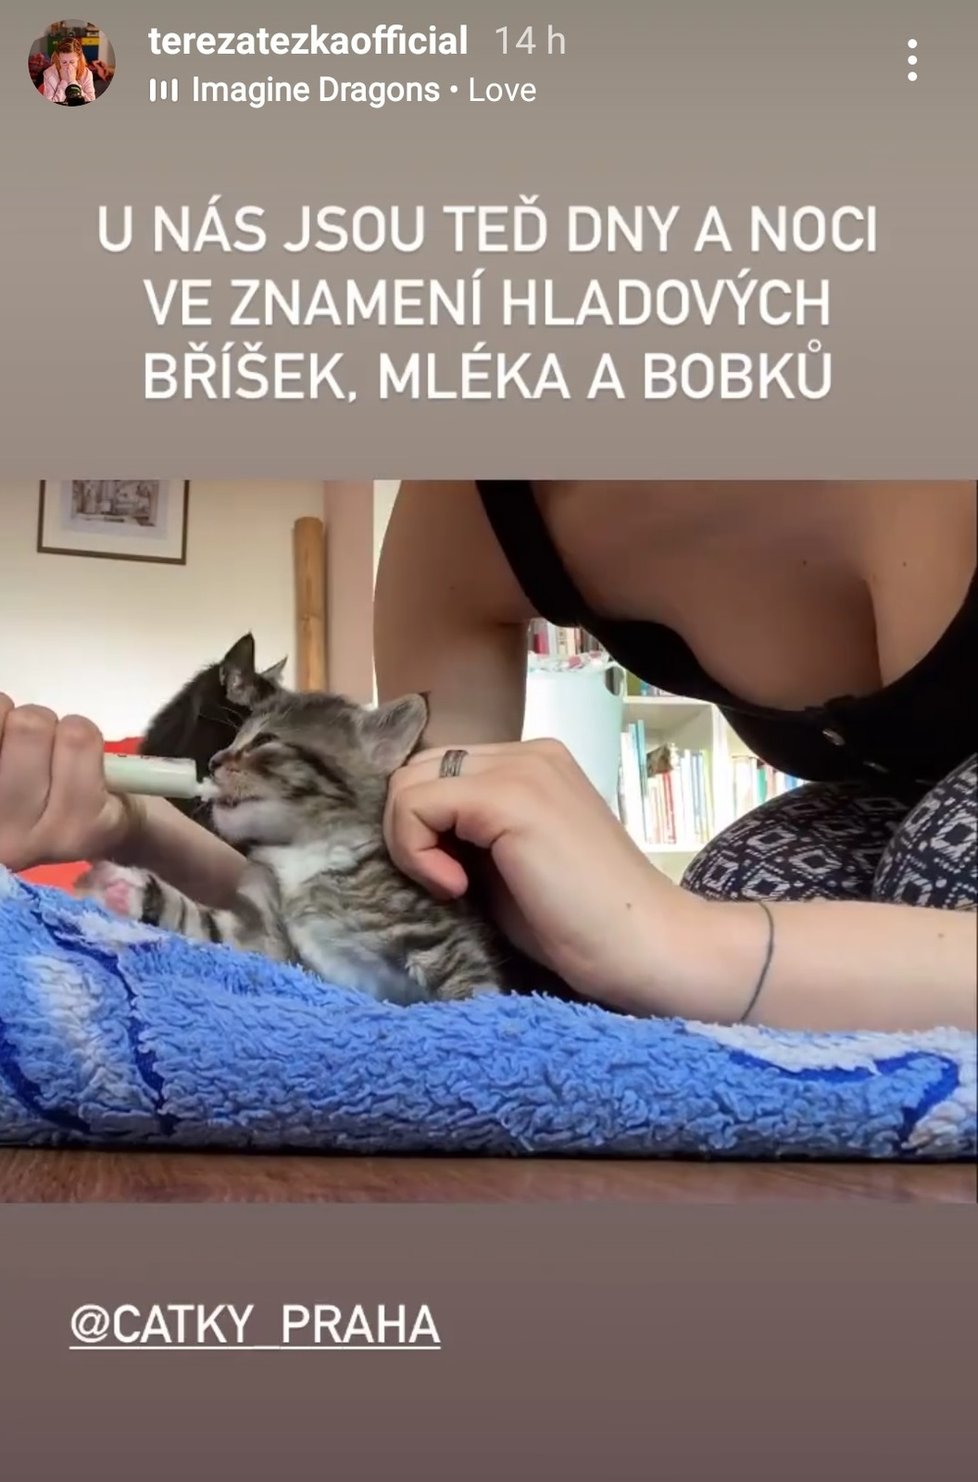 Herečka Tereza Těžká tráví „covidové prázdniny“ péčí o opuštěná koťata.